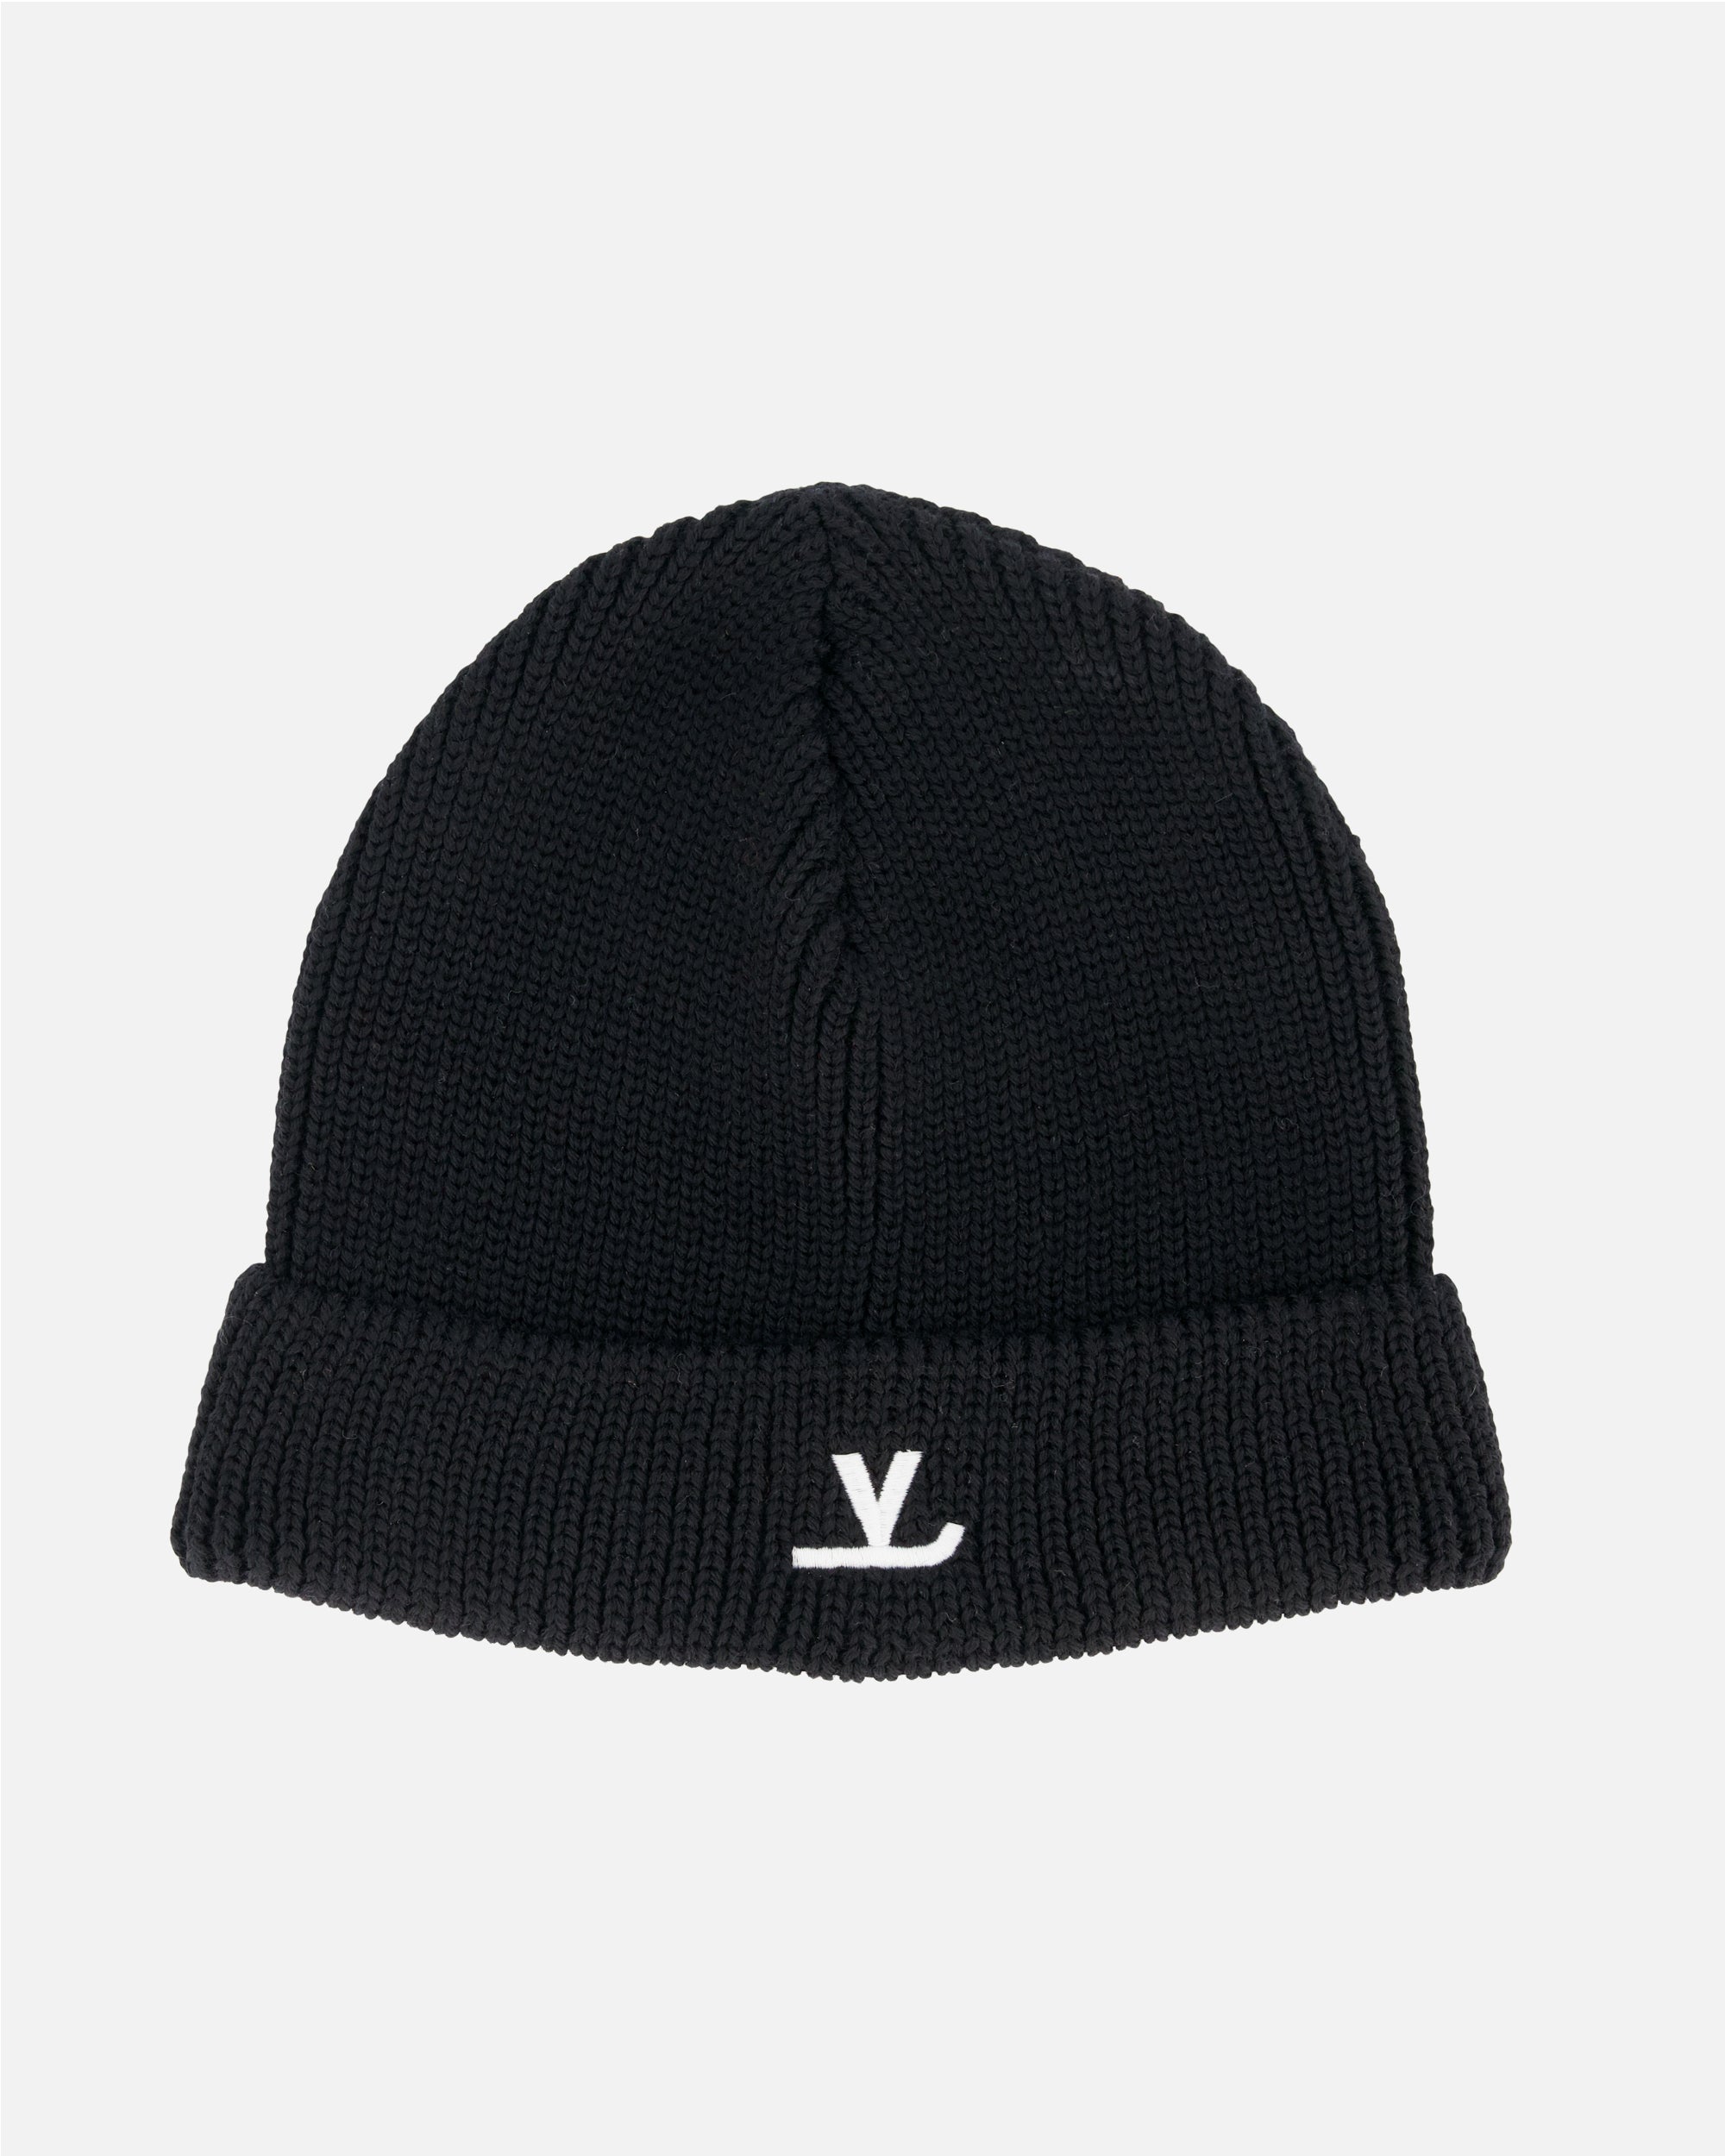 Louis Vuitton Mens Knit Hats, Black